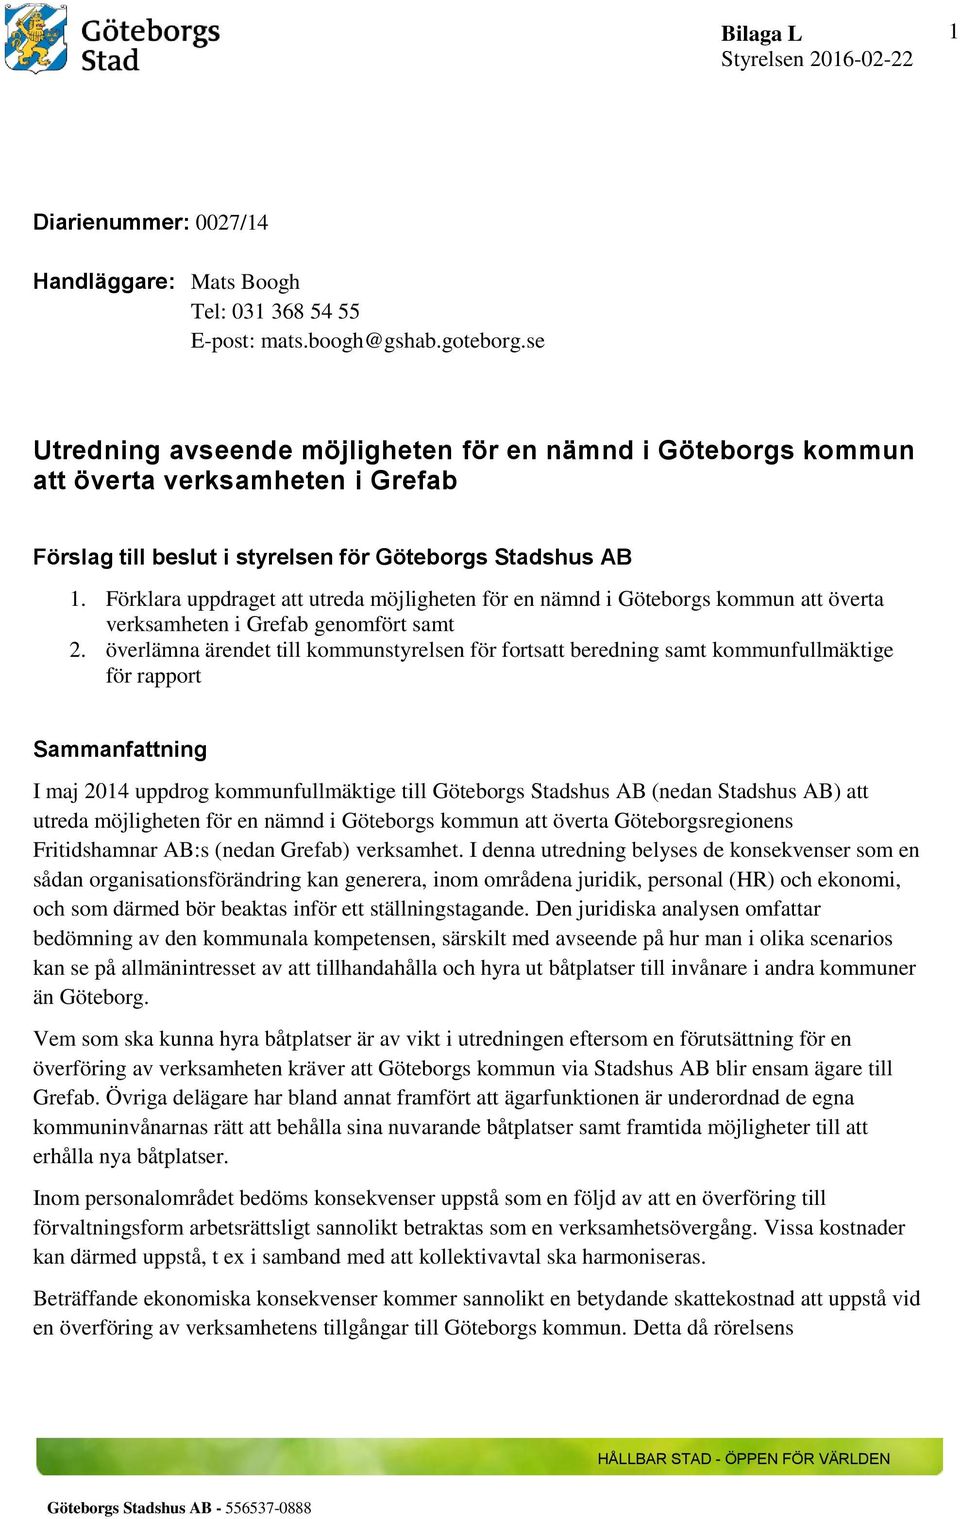 Förklara uppdraget att utreda möjligheten för en nämnd i Göteborgs kommun att överta verksamheten i Grefab genomfört samt 2.